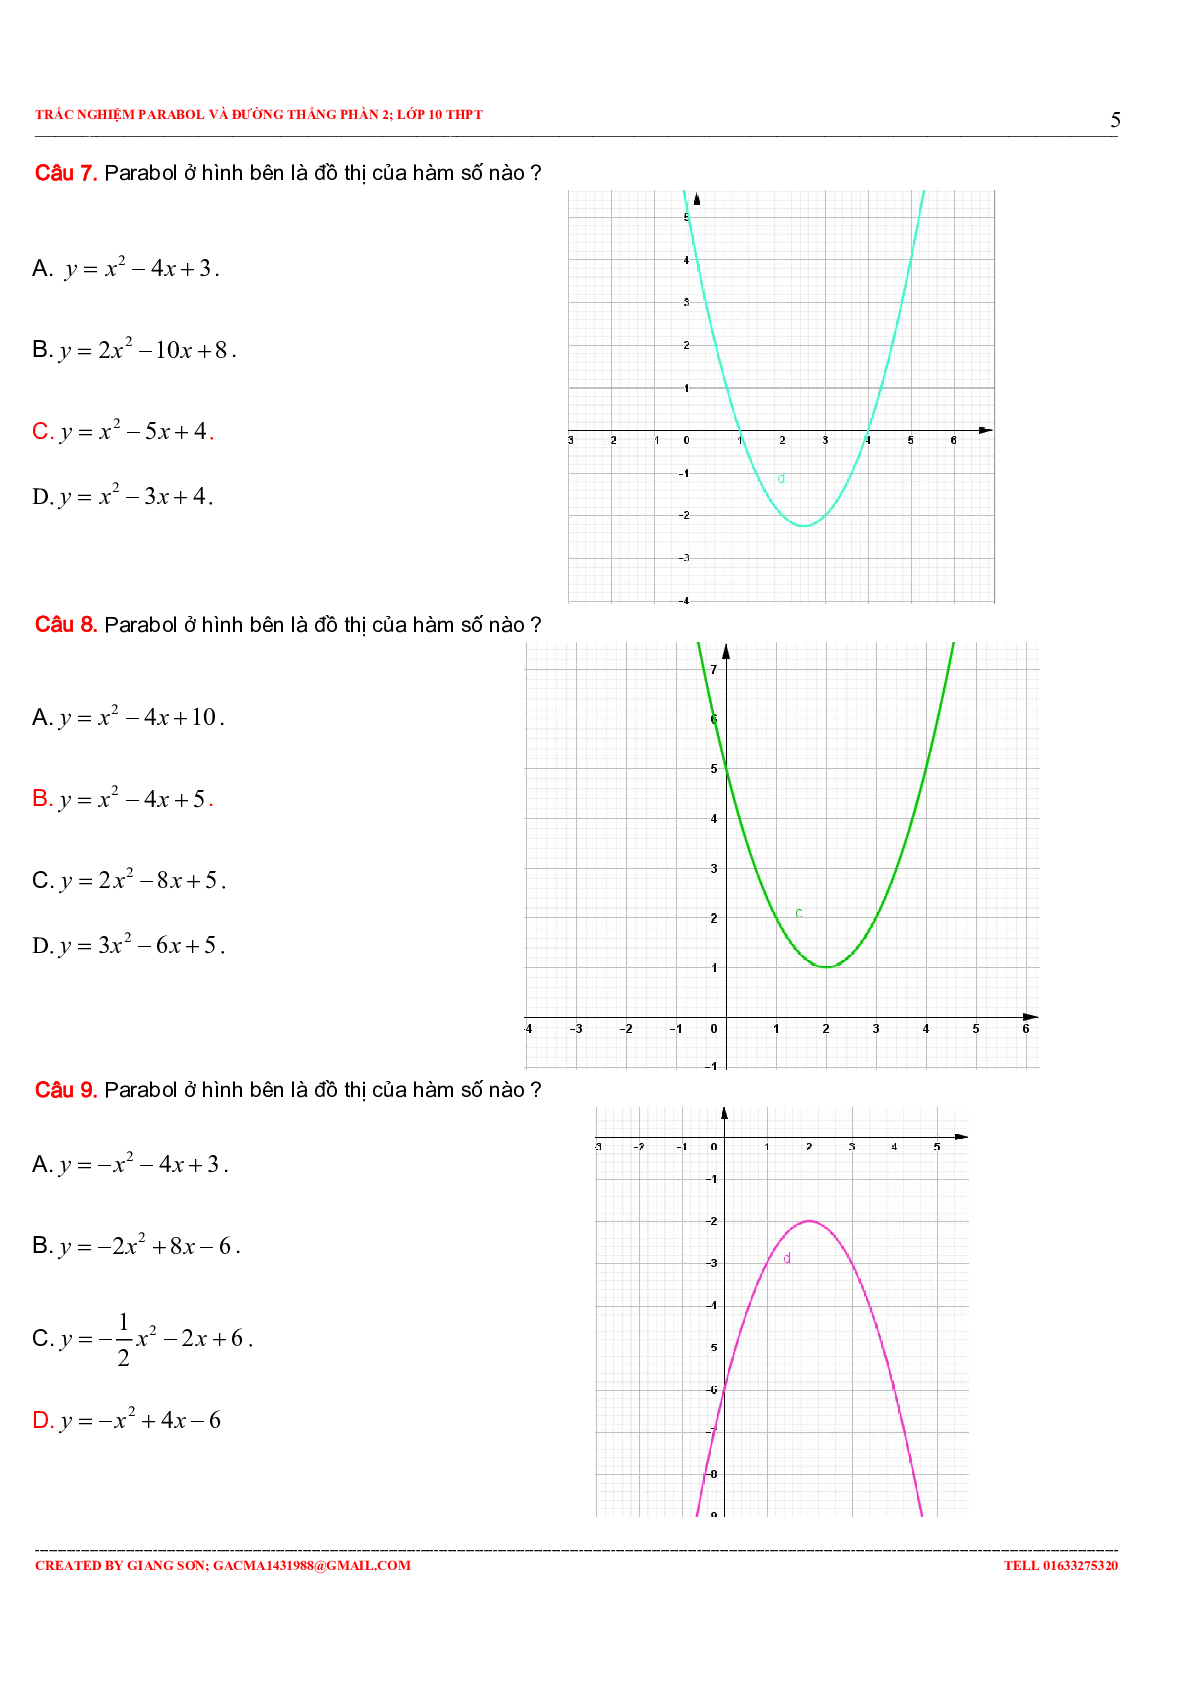 97 Bài tập trắc nghiệm Parabol và đường thẳng phần 2 (trang 5)